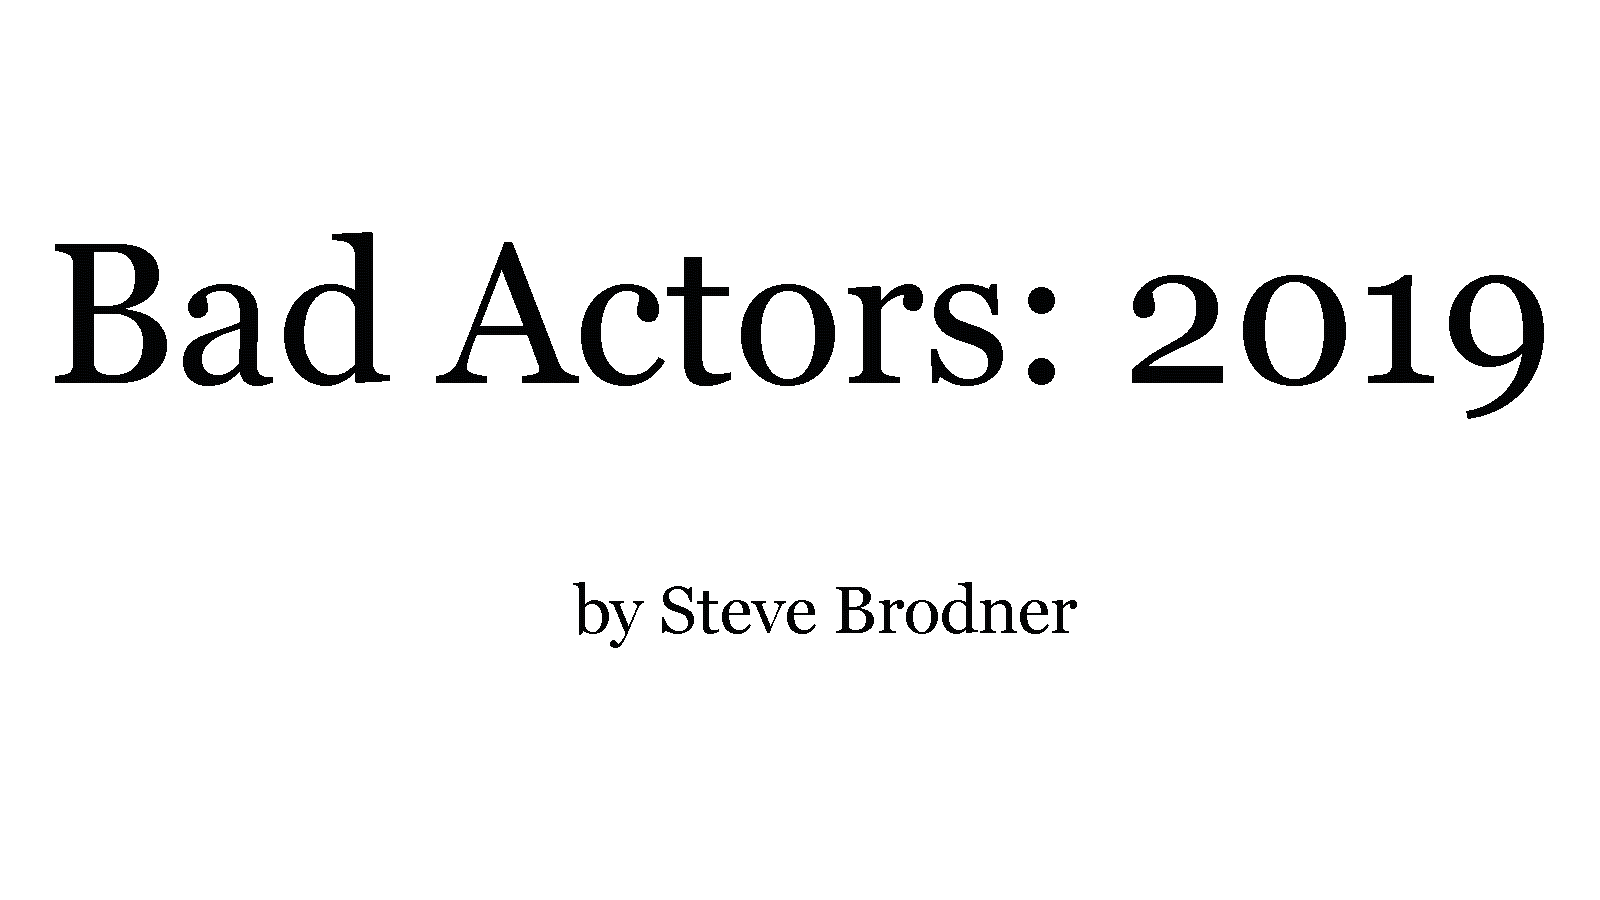 Bad Actors, 2019